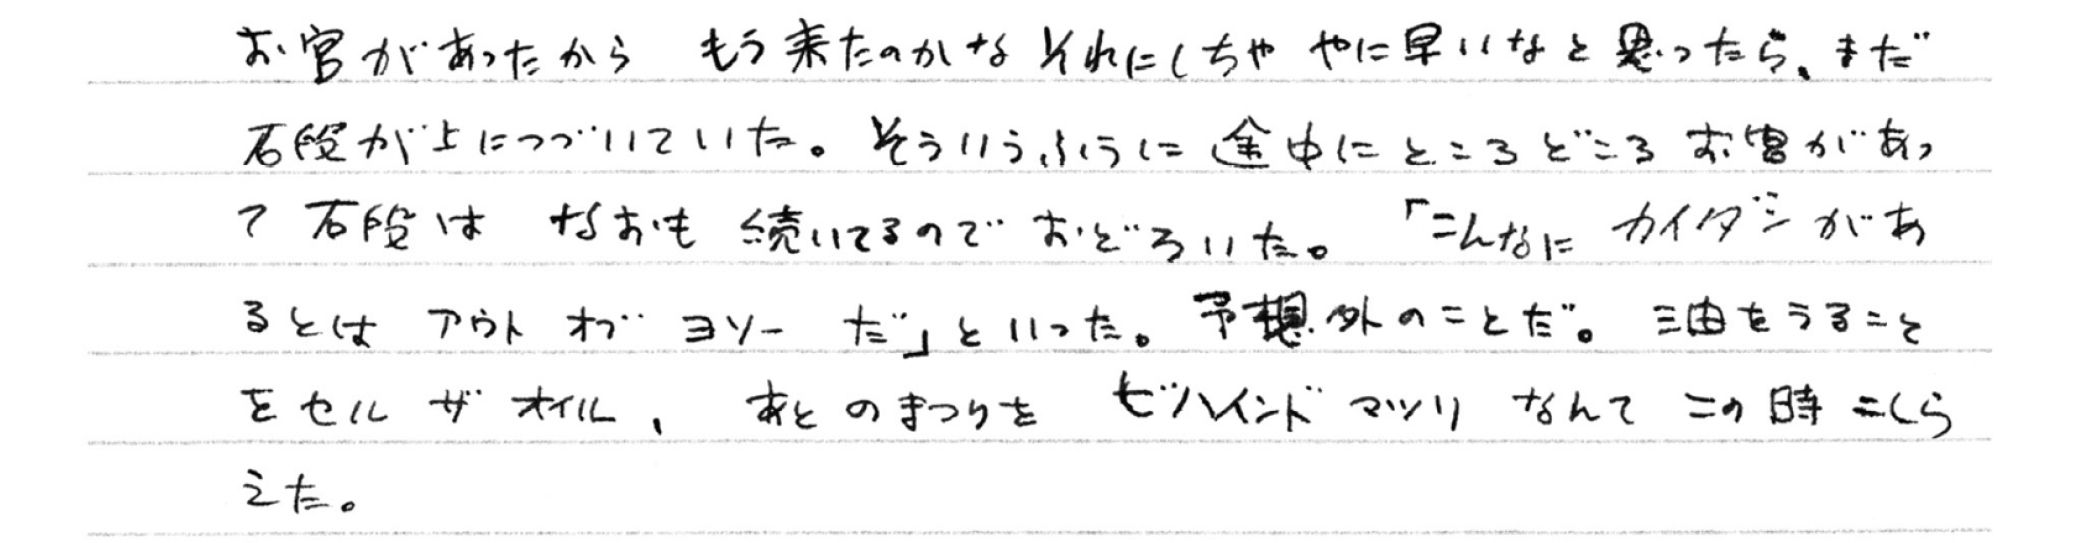 1954年5月25日　修学旅行で香川の金刀比羅宮へ行き、長い長い石段を登りながら次々に英語を使った新しい表現が思い浮かぶ。「言葉遊びが大好きだったけれど、これがその始まりなんじゃないかって思うの」とレミさん　©文藝春秋